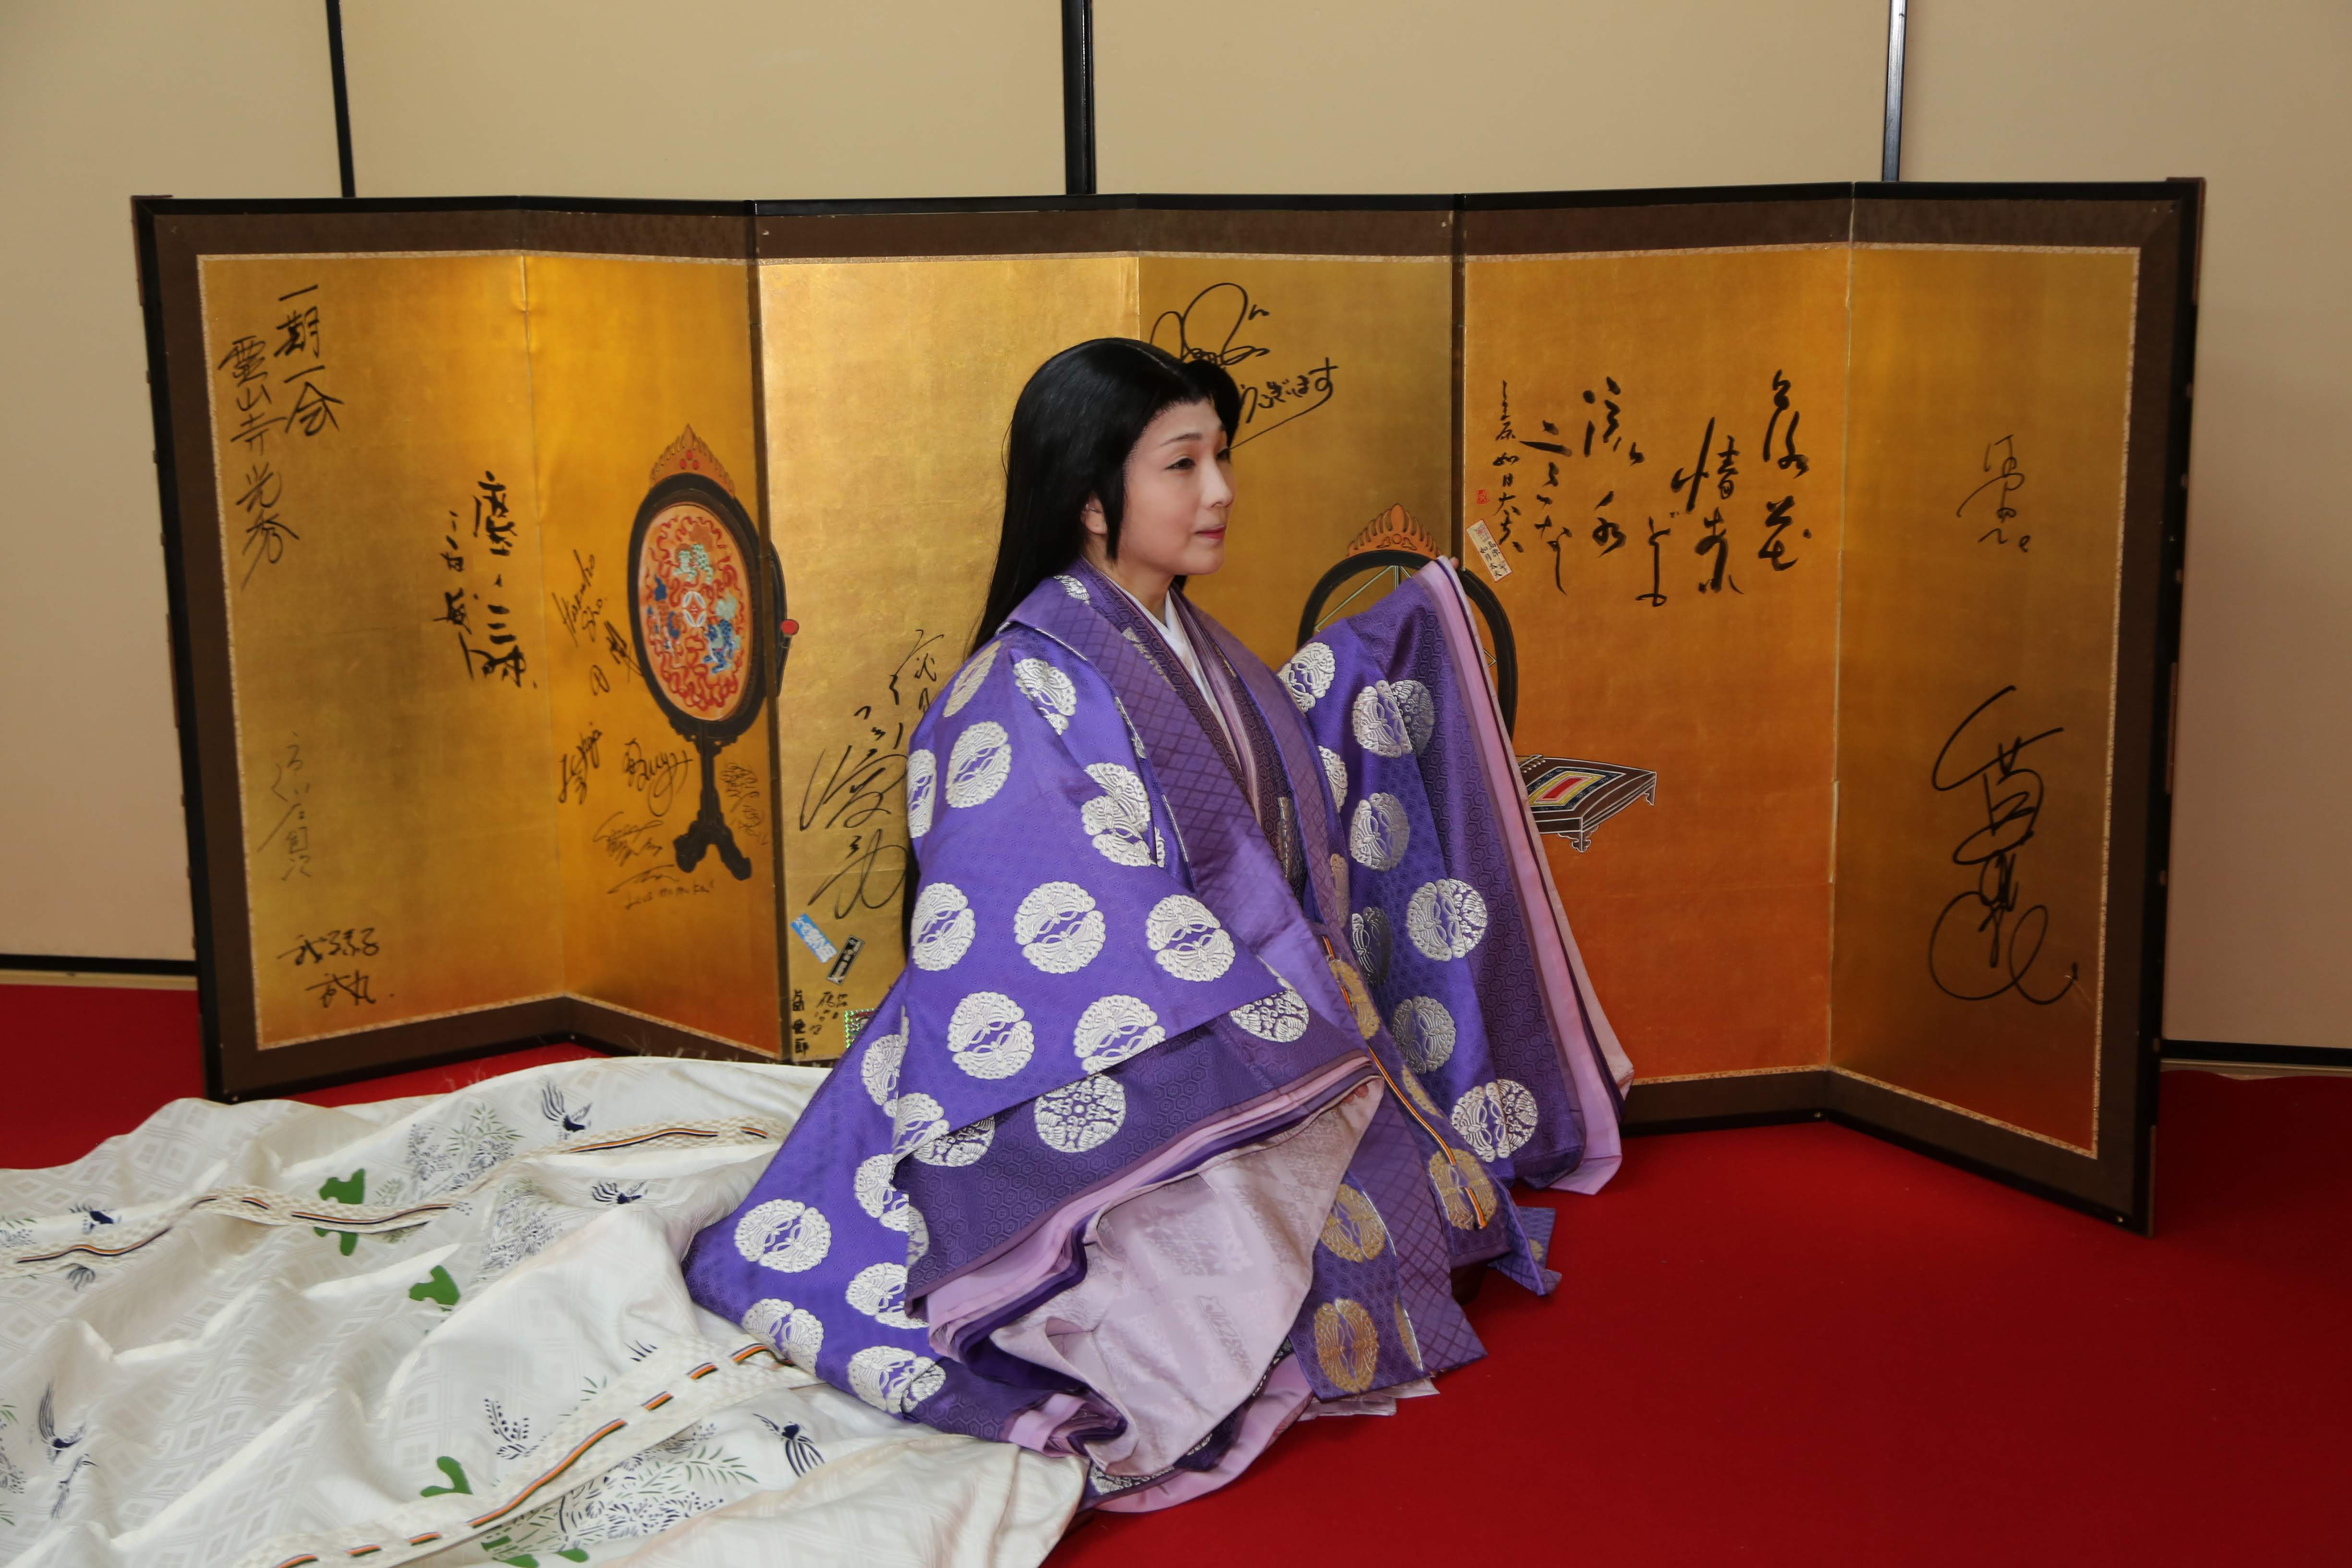 知性溢れる清少納言 十二単と着物レンタルの雅ゆきで結婚式・京都観光